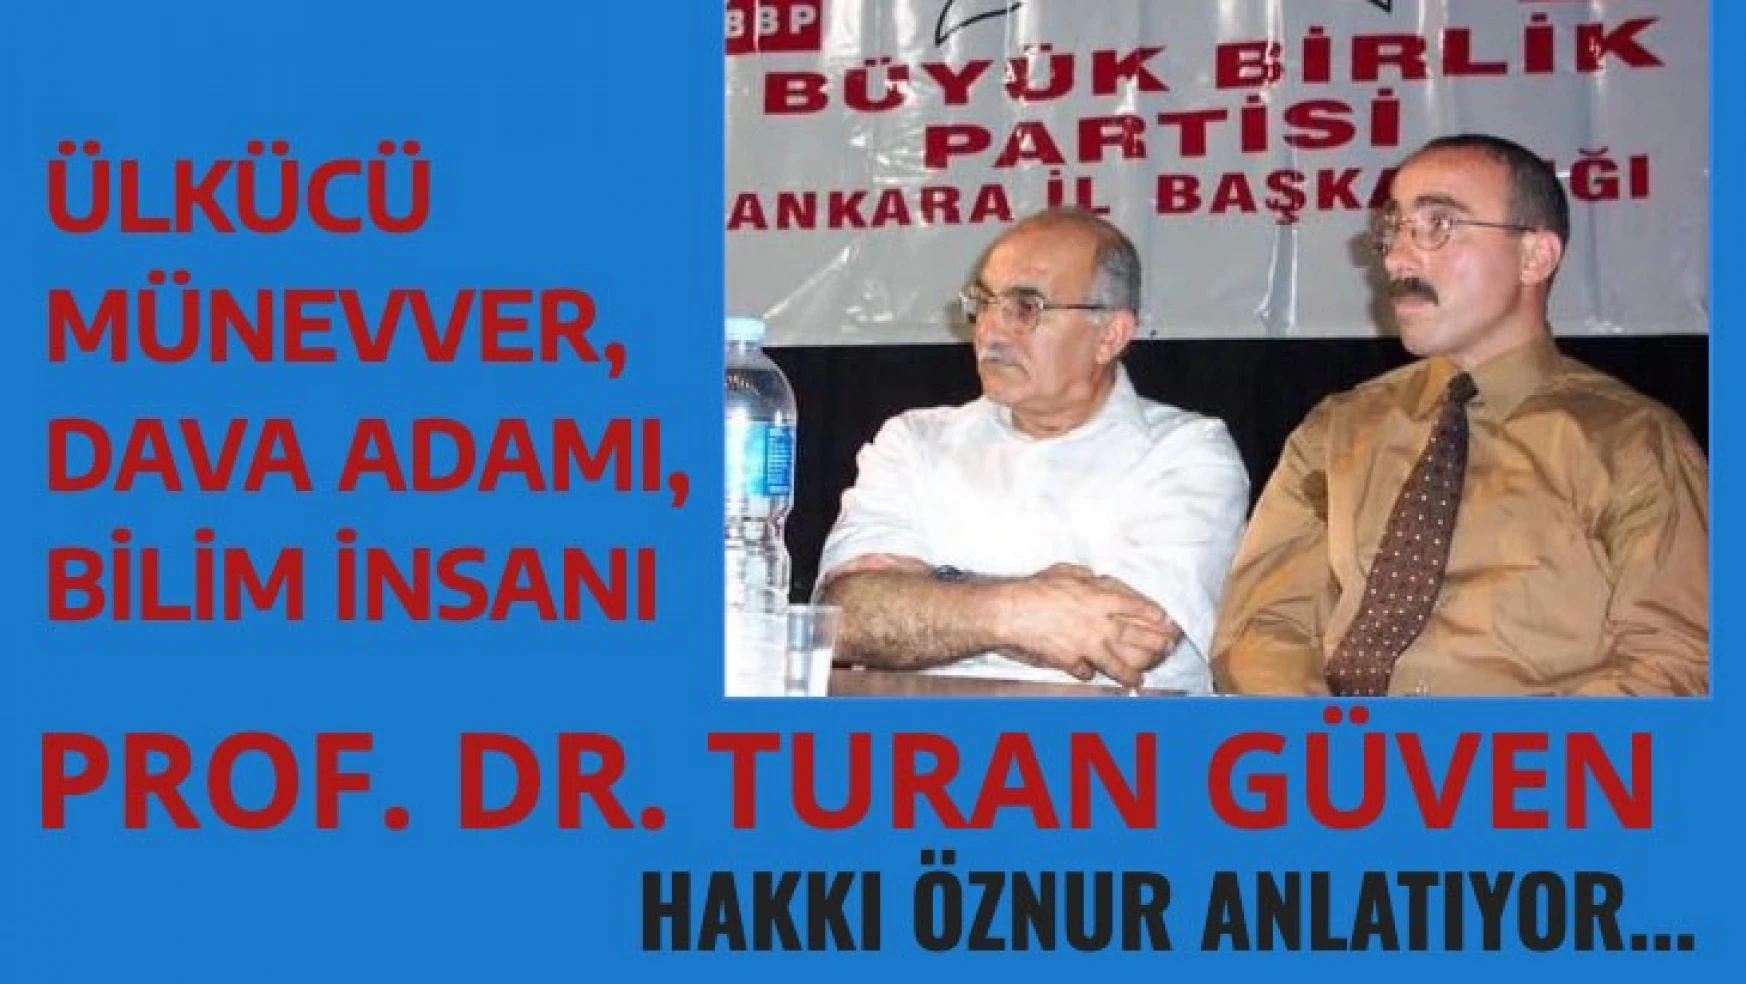 Ülkücü, münevver, dava insanı Prof. Dr. Turan Güven'i Hakkı Öznur anlatıyor